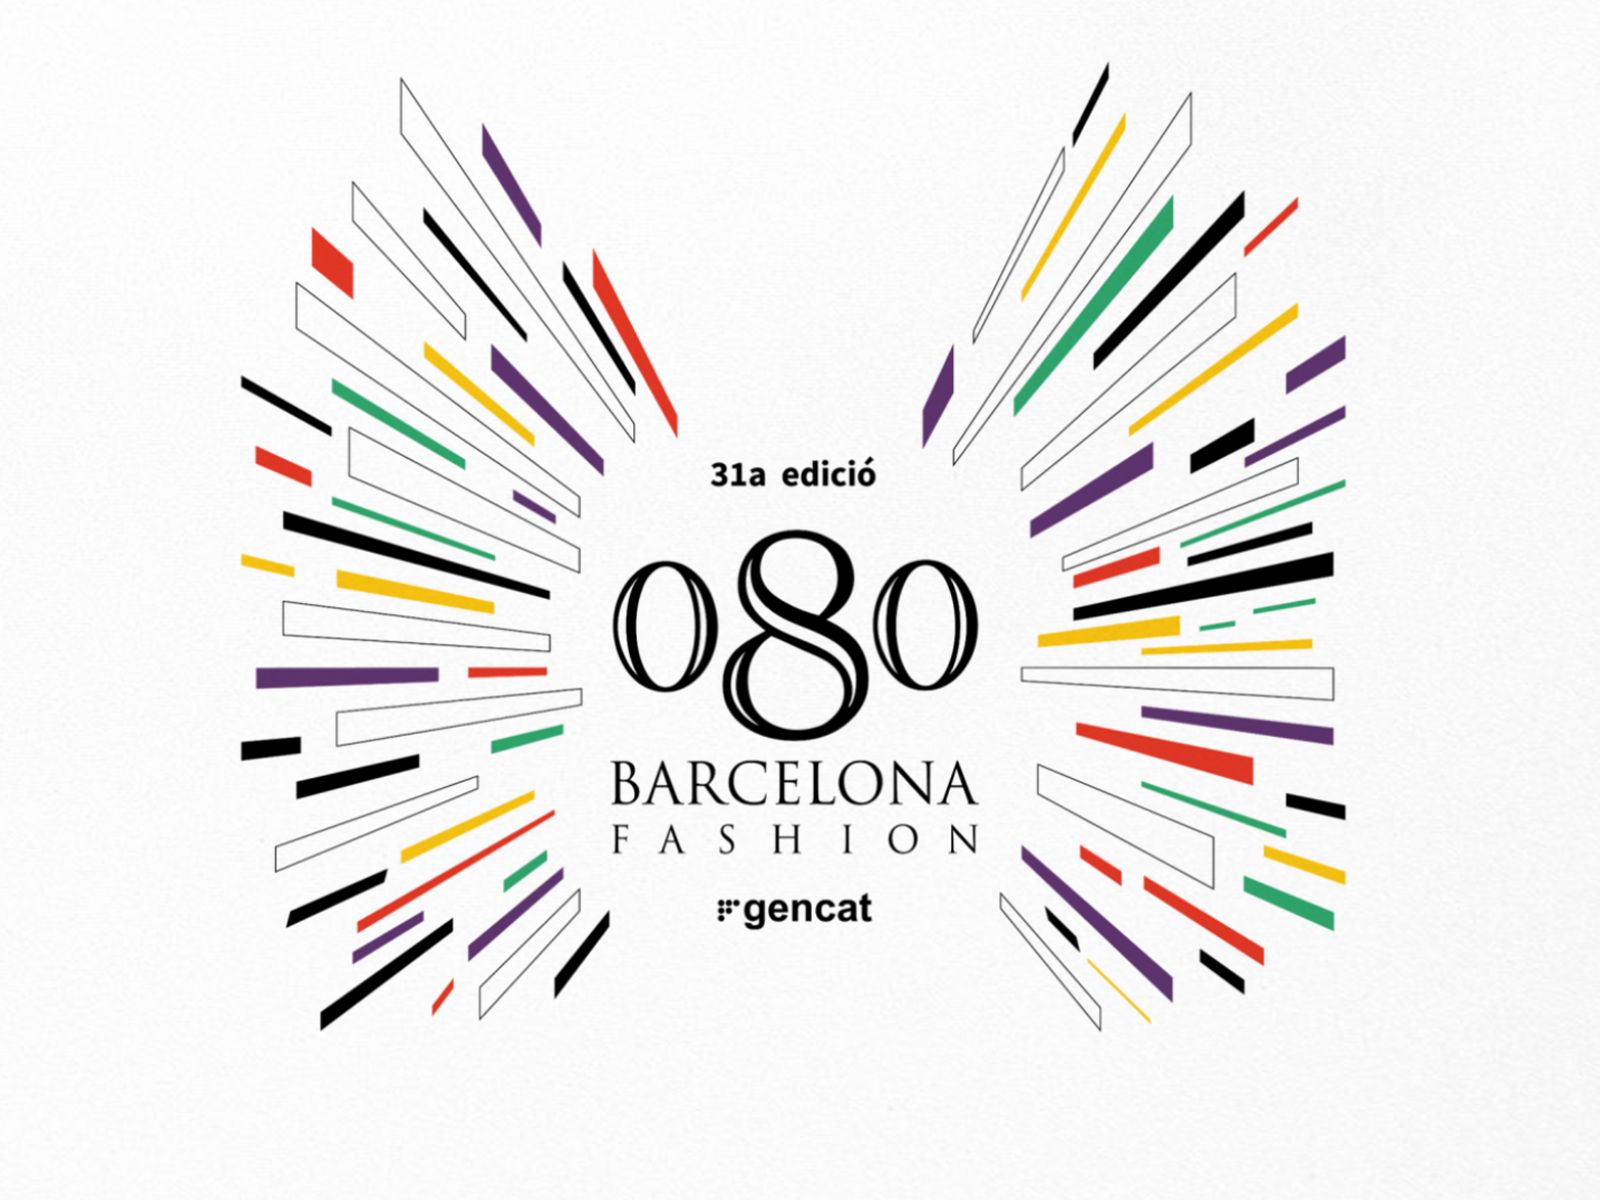 Arranca la 31ª edición de 080 Barcelona Fashion